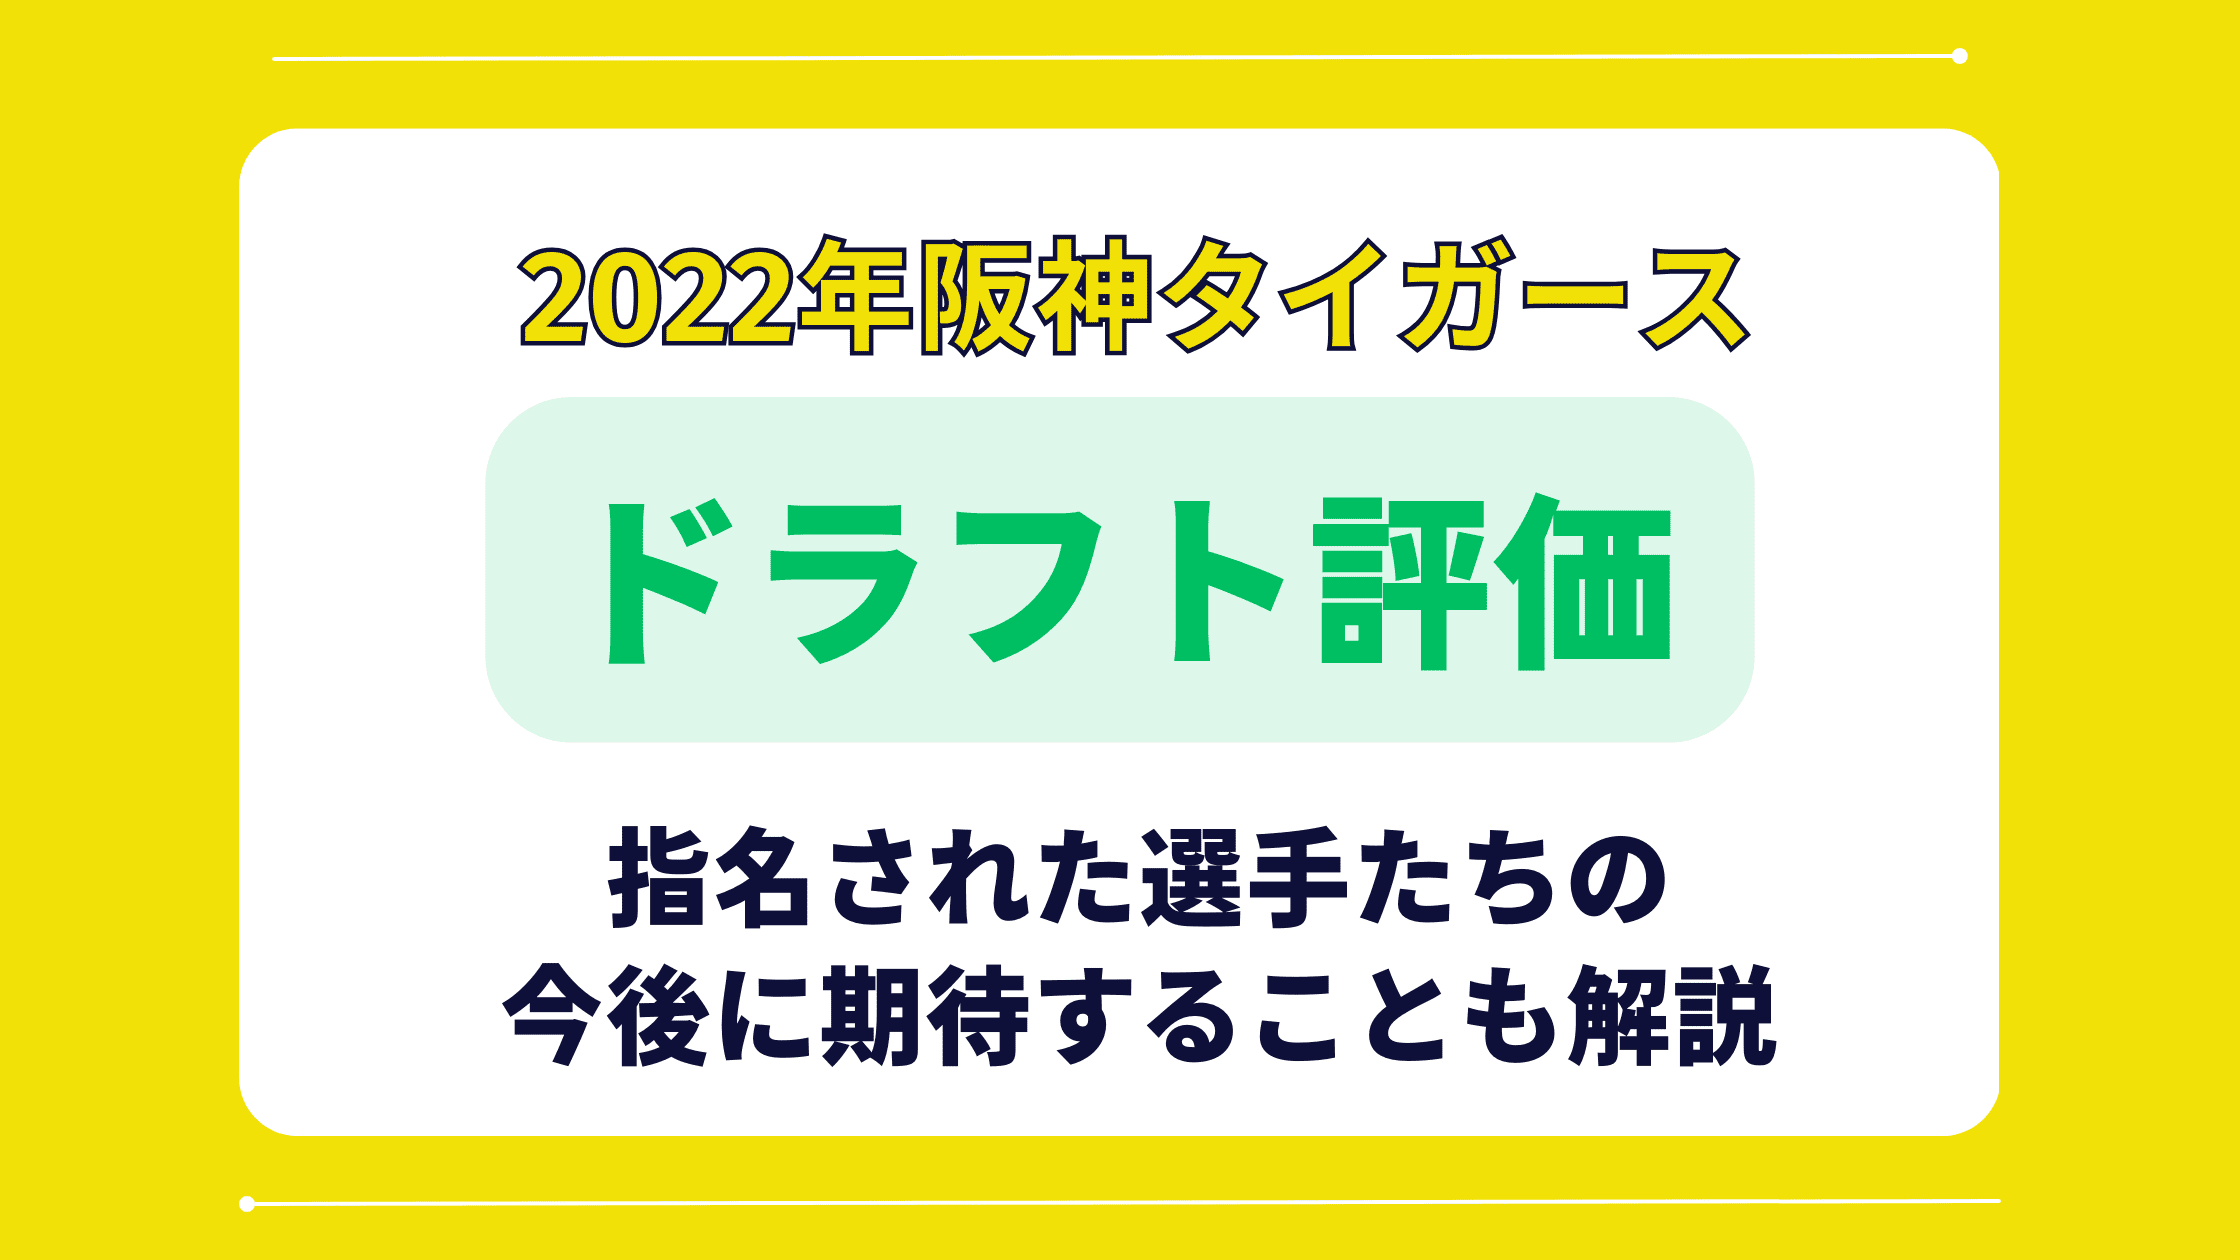 【阪神】ドラフト会議2022を評価・採点!!【将来性豊かなドラフトでした】